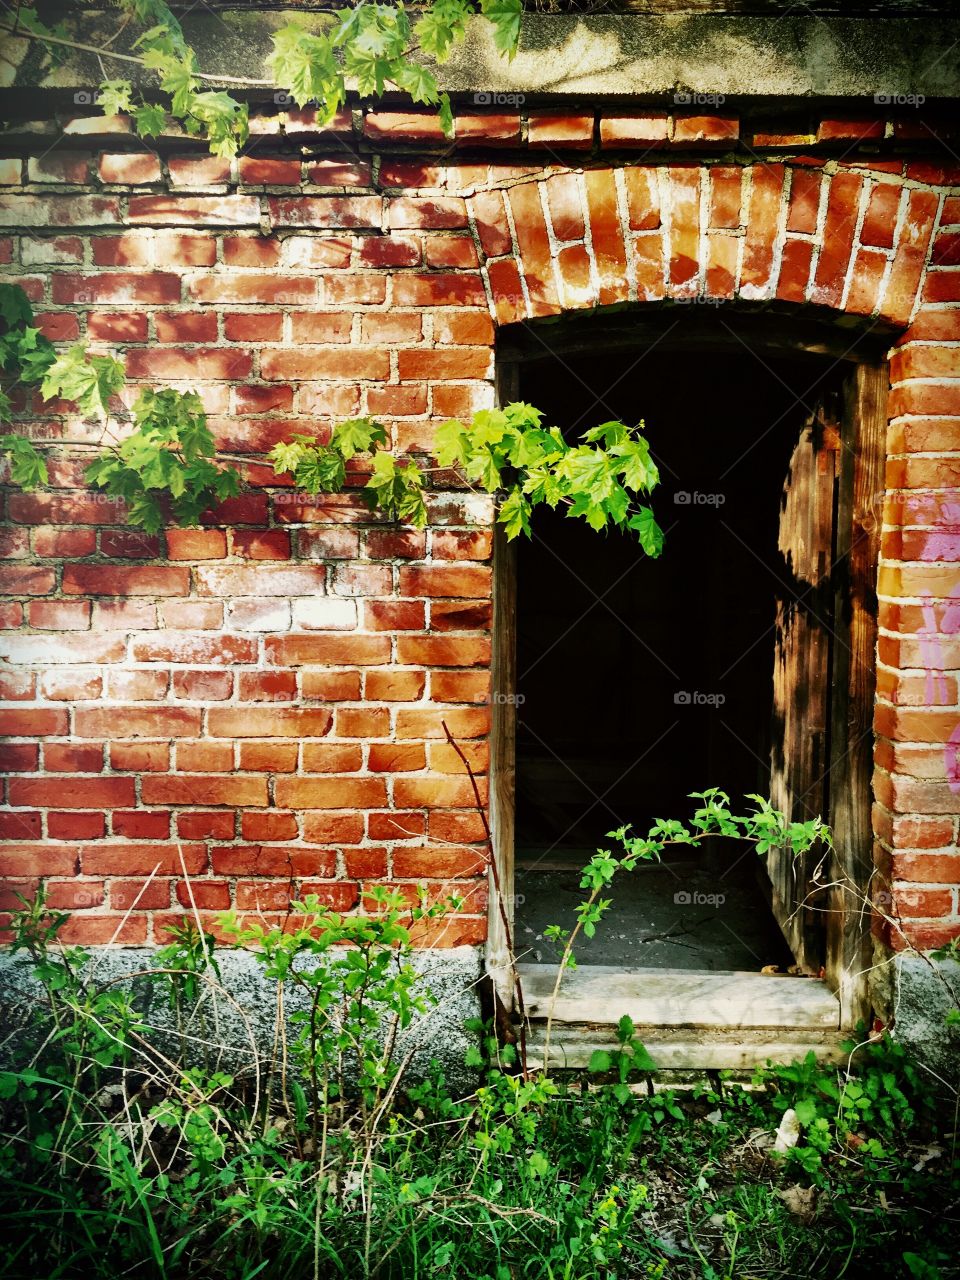 Invitation. Open door to abandoned brick building